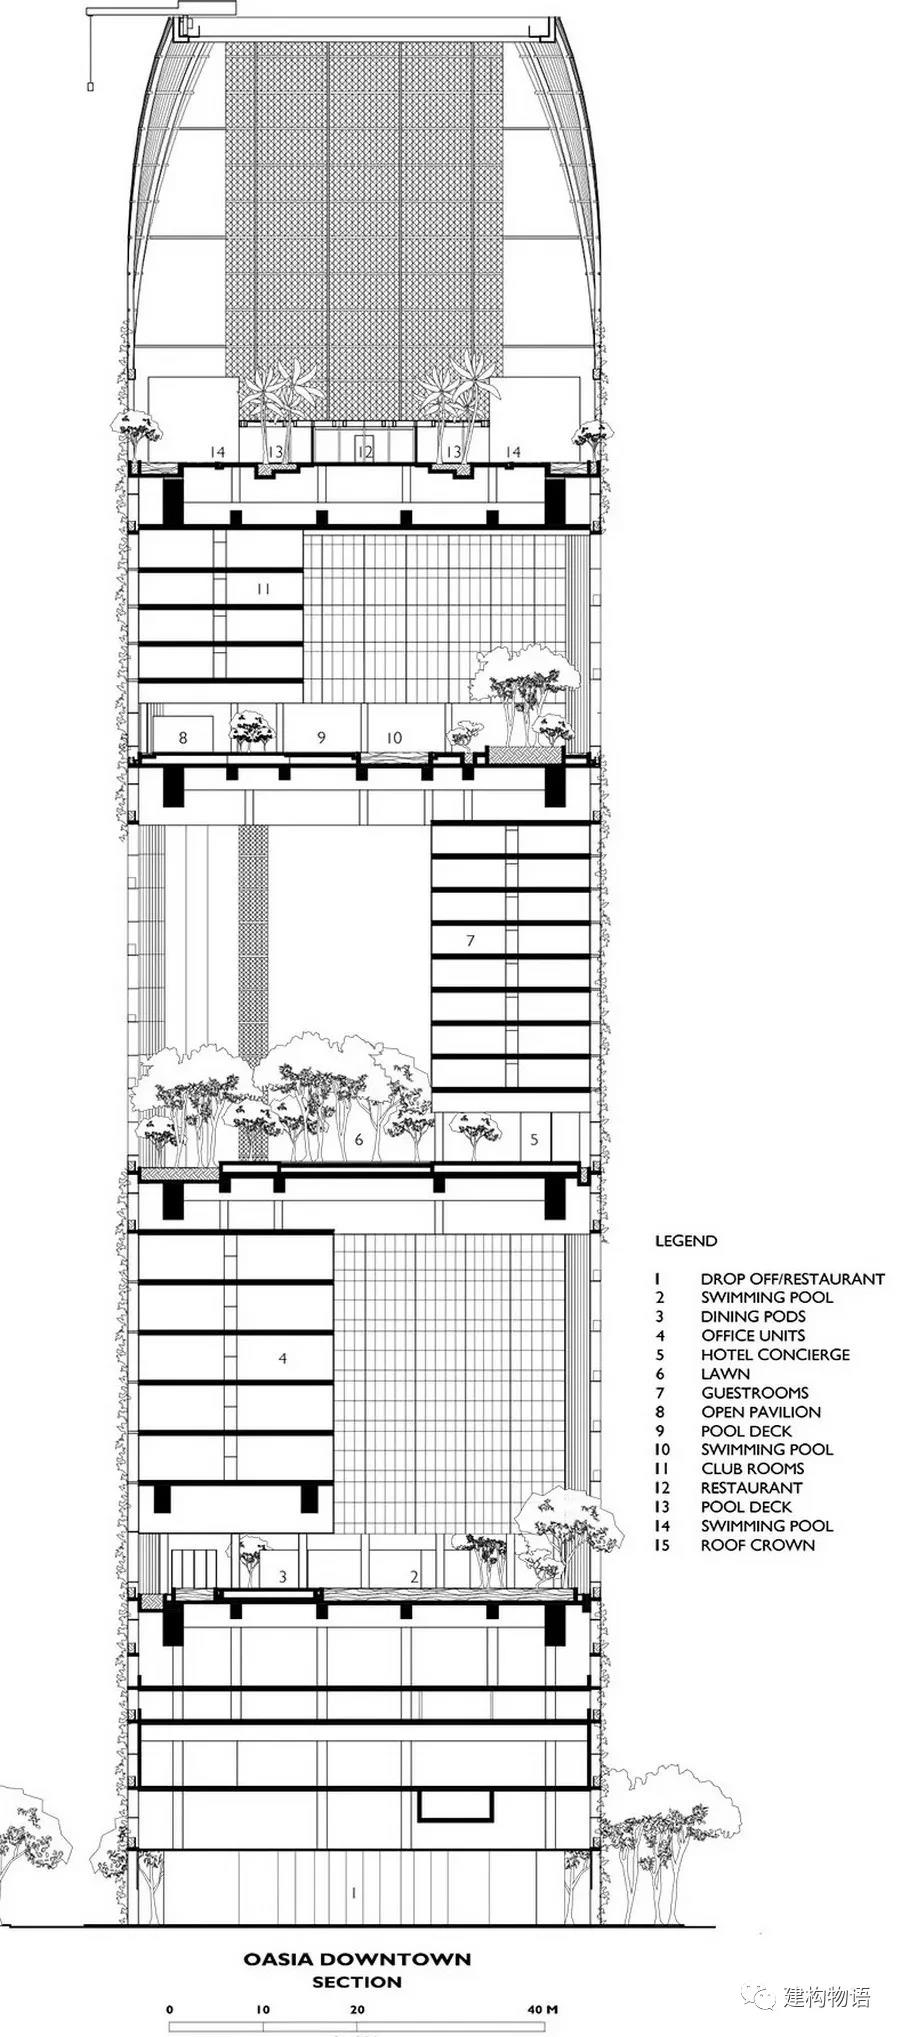 剖面图——清晰地表达出建筑空间的规划，客房与空中花园的关系。.jpg